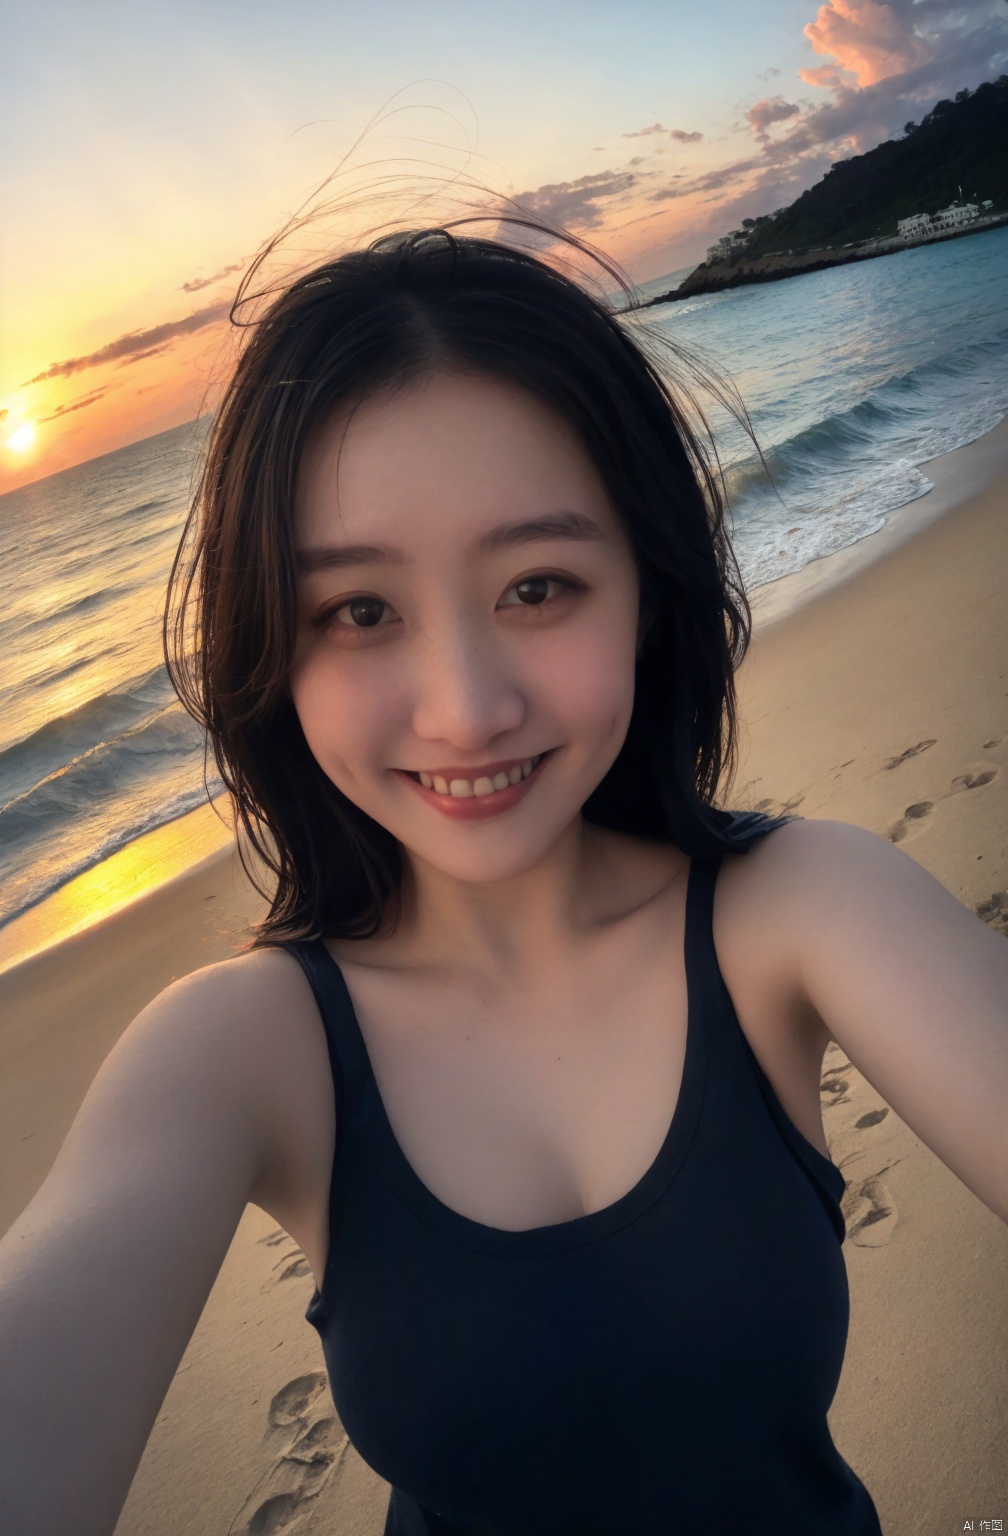  1girl, fisheye, selfie, sea, wind, messy hair, sunset, beach, (aesthetics and atmosphere:1.2), black **** top, medium_breasts, light smile